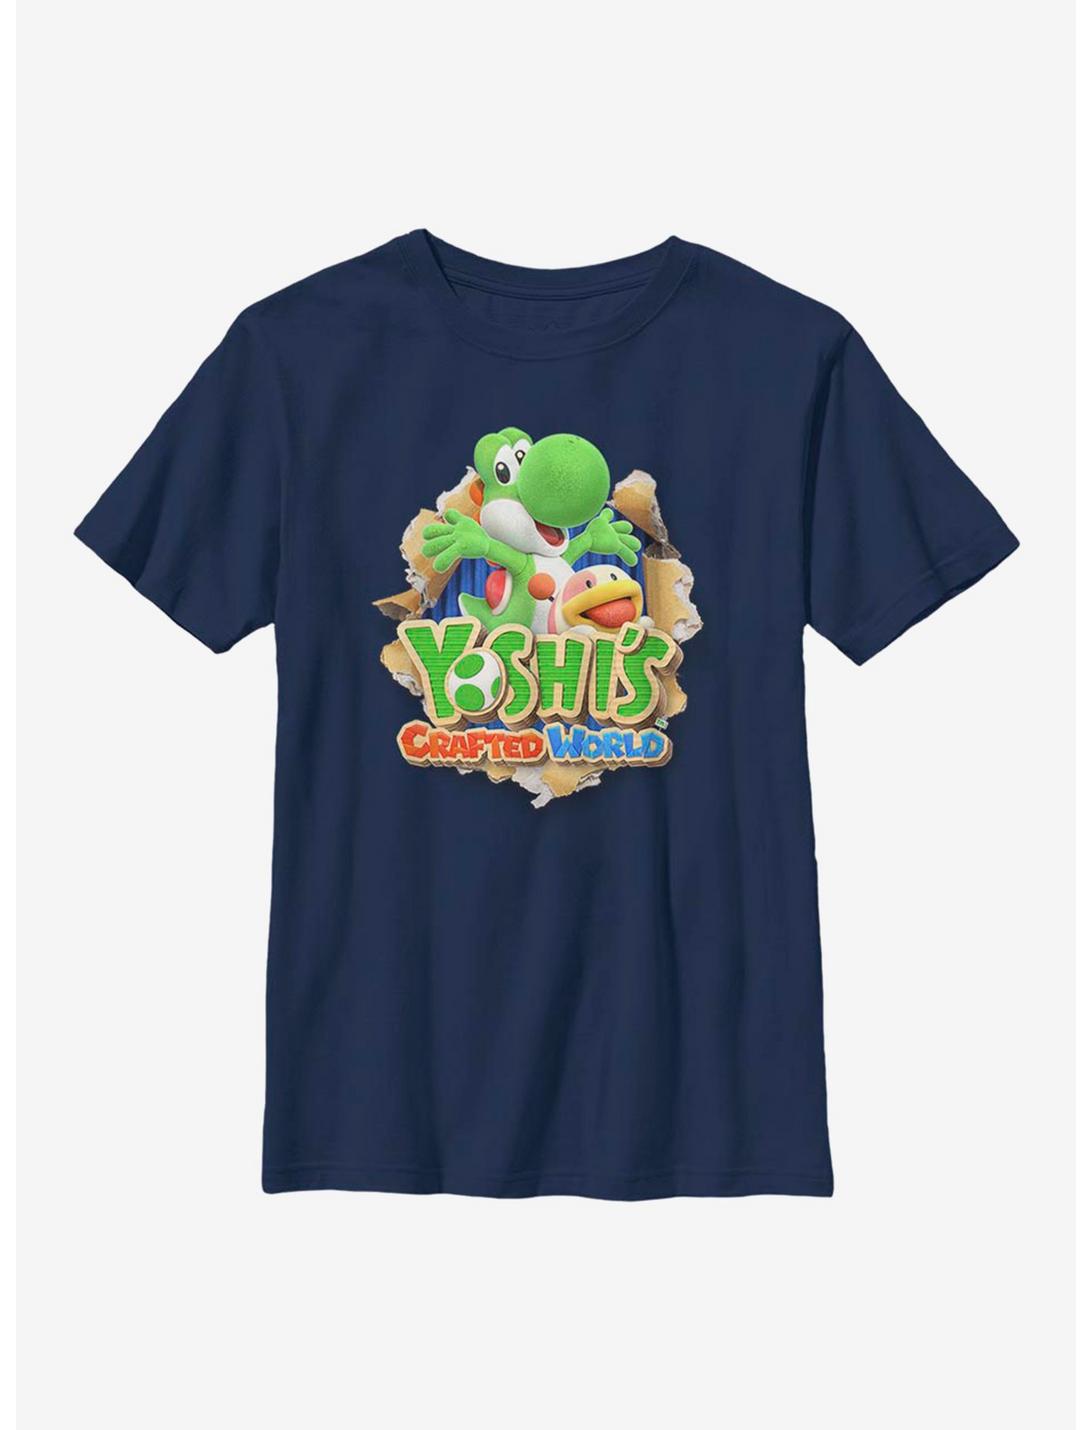 Nintendo Super Mario Character Logo Youth T-Shirt, NAVY, hi-res